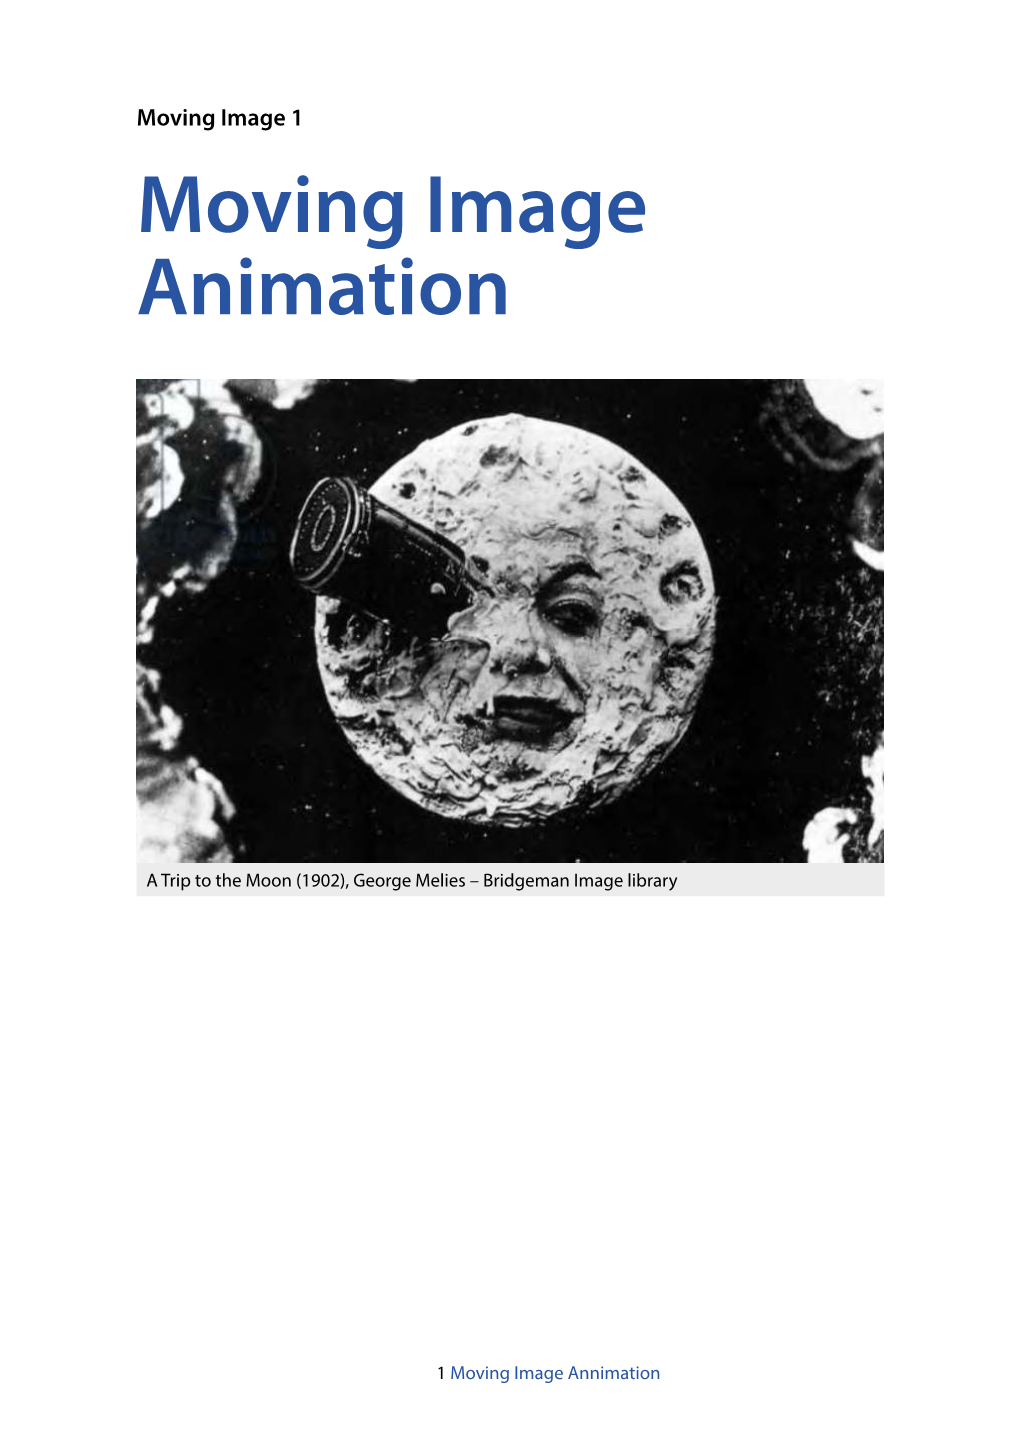 Moving Image 1: Animation